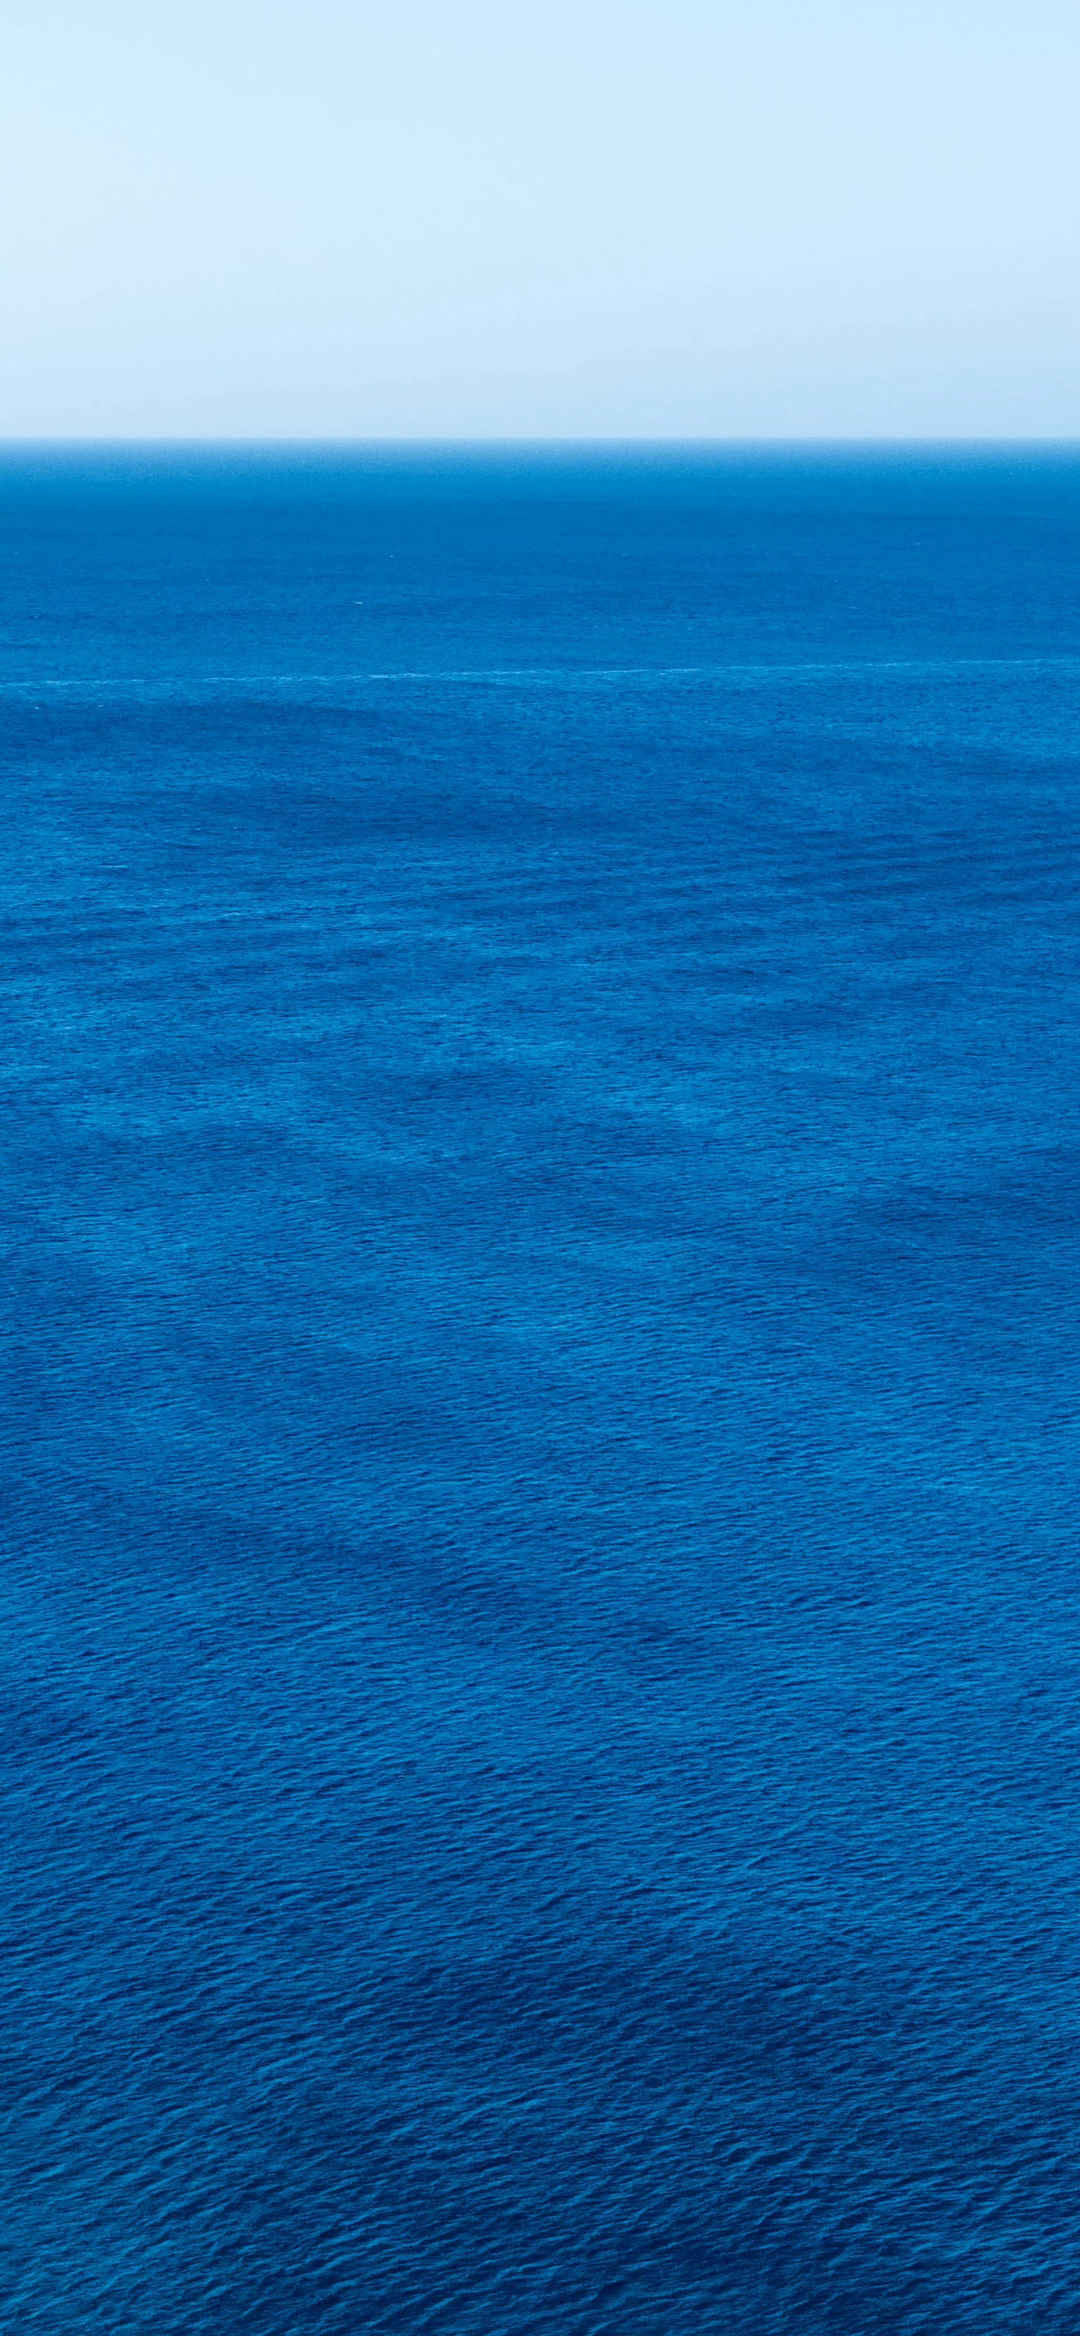 唯美蓝色海洋景深效果手机壁纸-